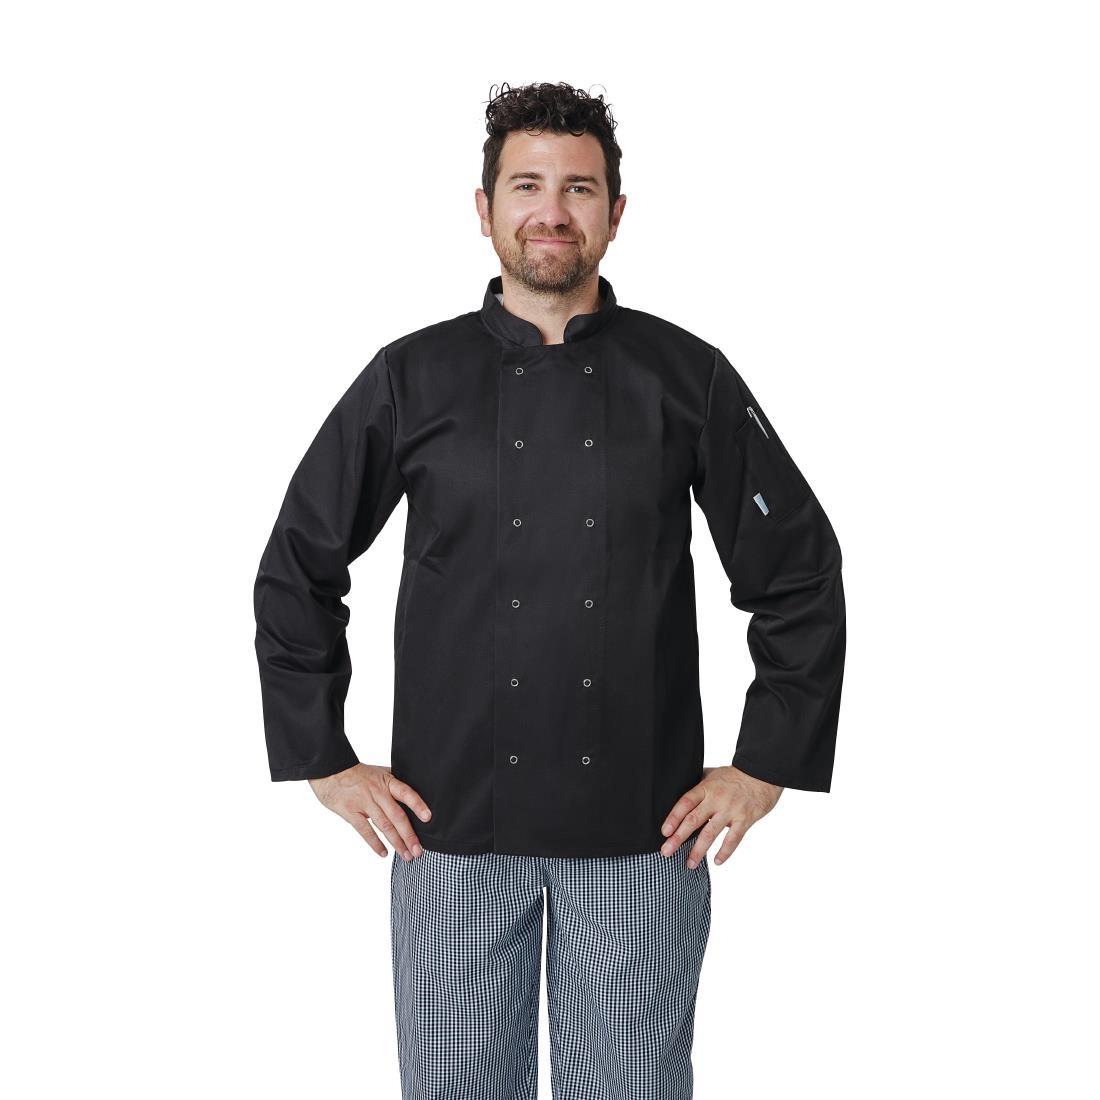 Whites Vegas Unisex Chefs Jacket Long Sleeve Black M - A438-M  - 5